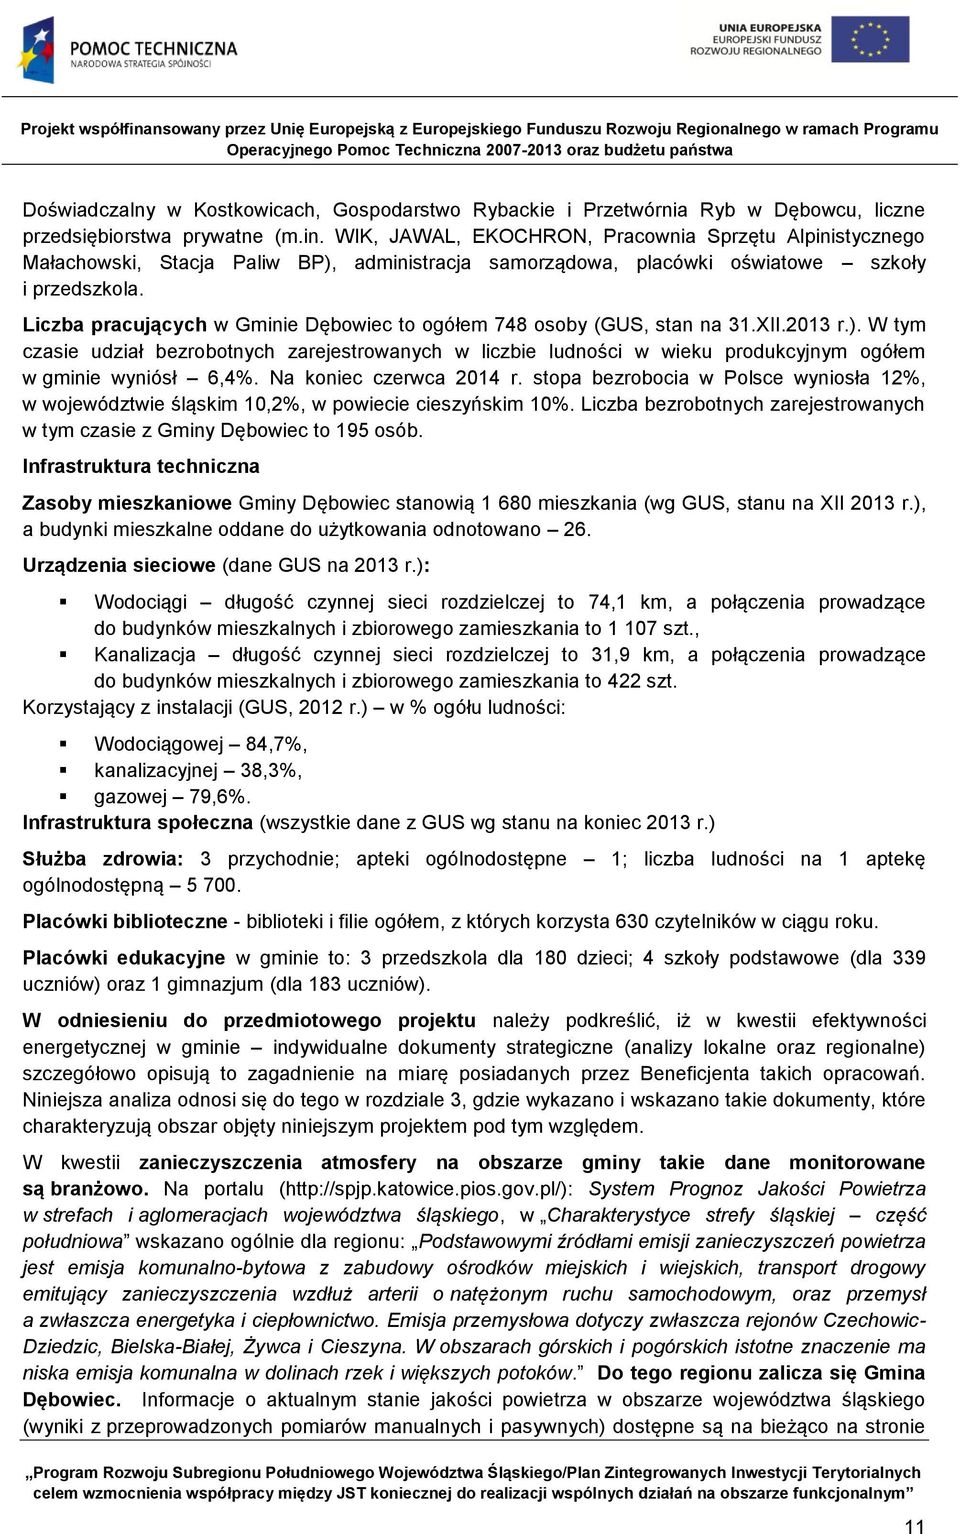 Liczba pracujących w Gminie Dębowiec to ogółem 748 osoby (GUS, stan na 31.XII.2013 r.).